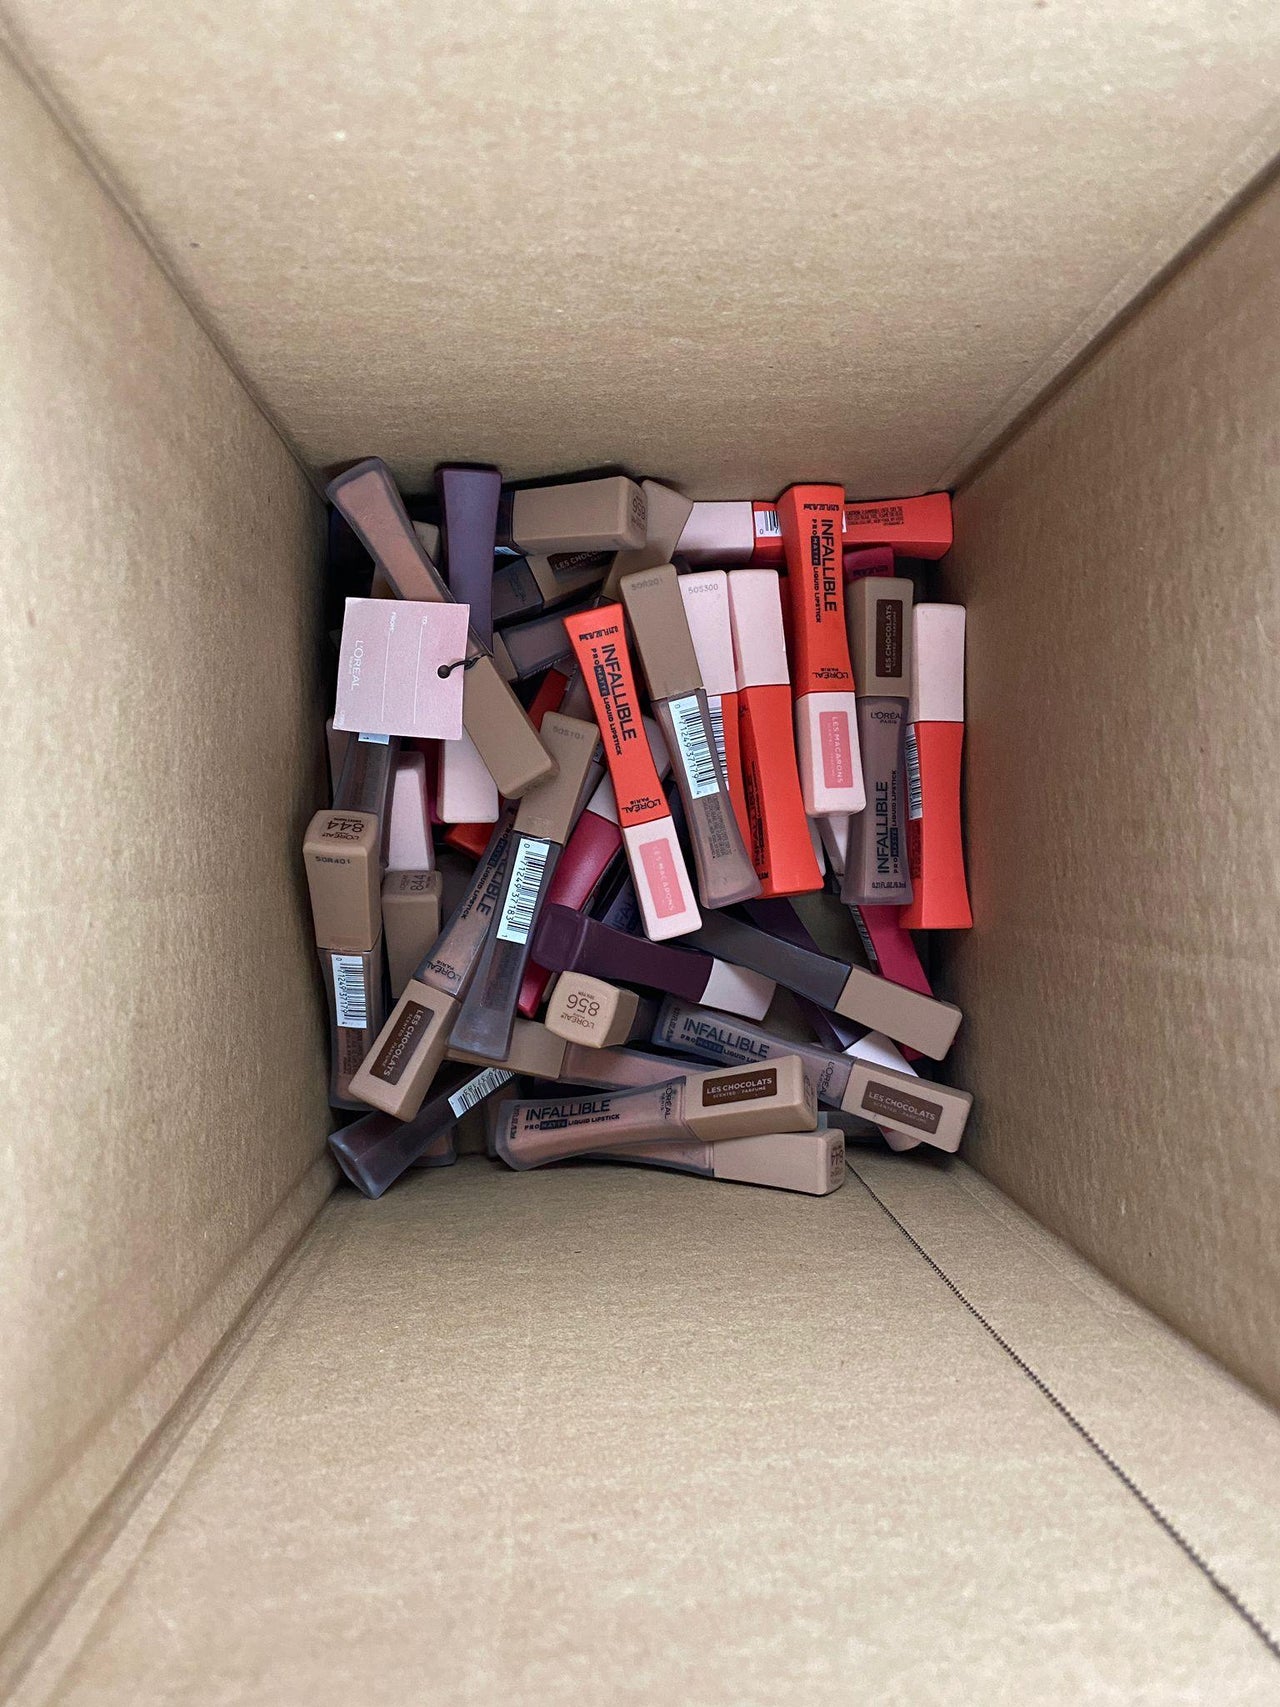 L'Oreal Infallible Matte Liquid Lipstick Assortment (50 Pcs Box) - Discount Wholesalers Inc